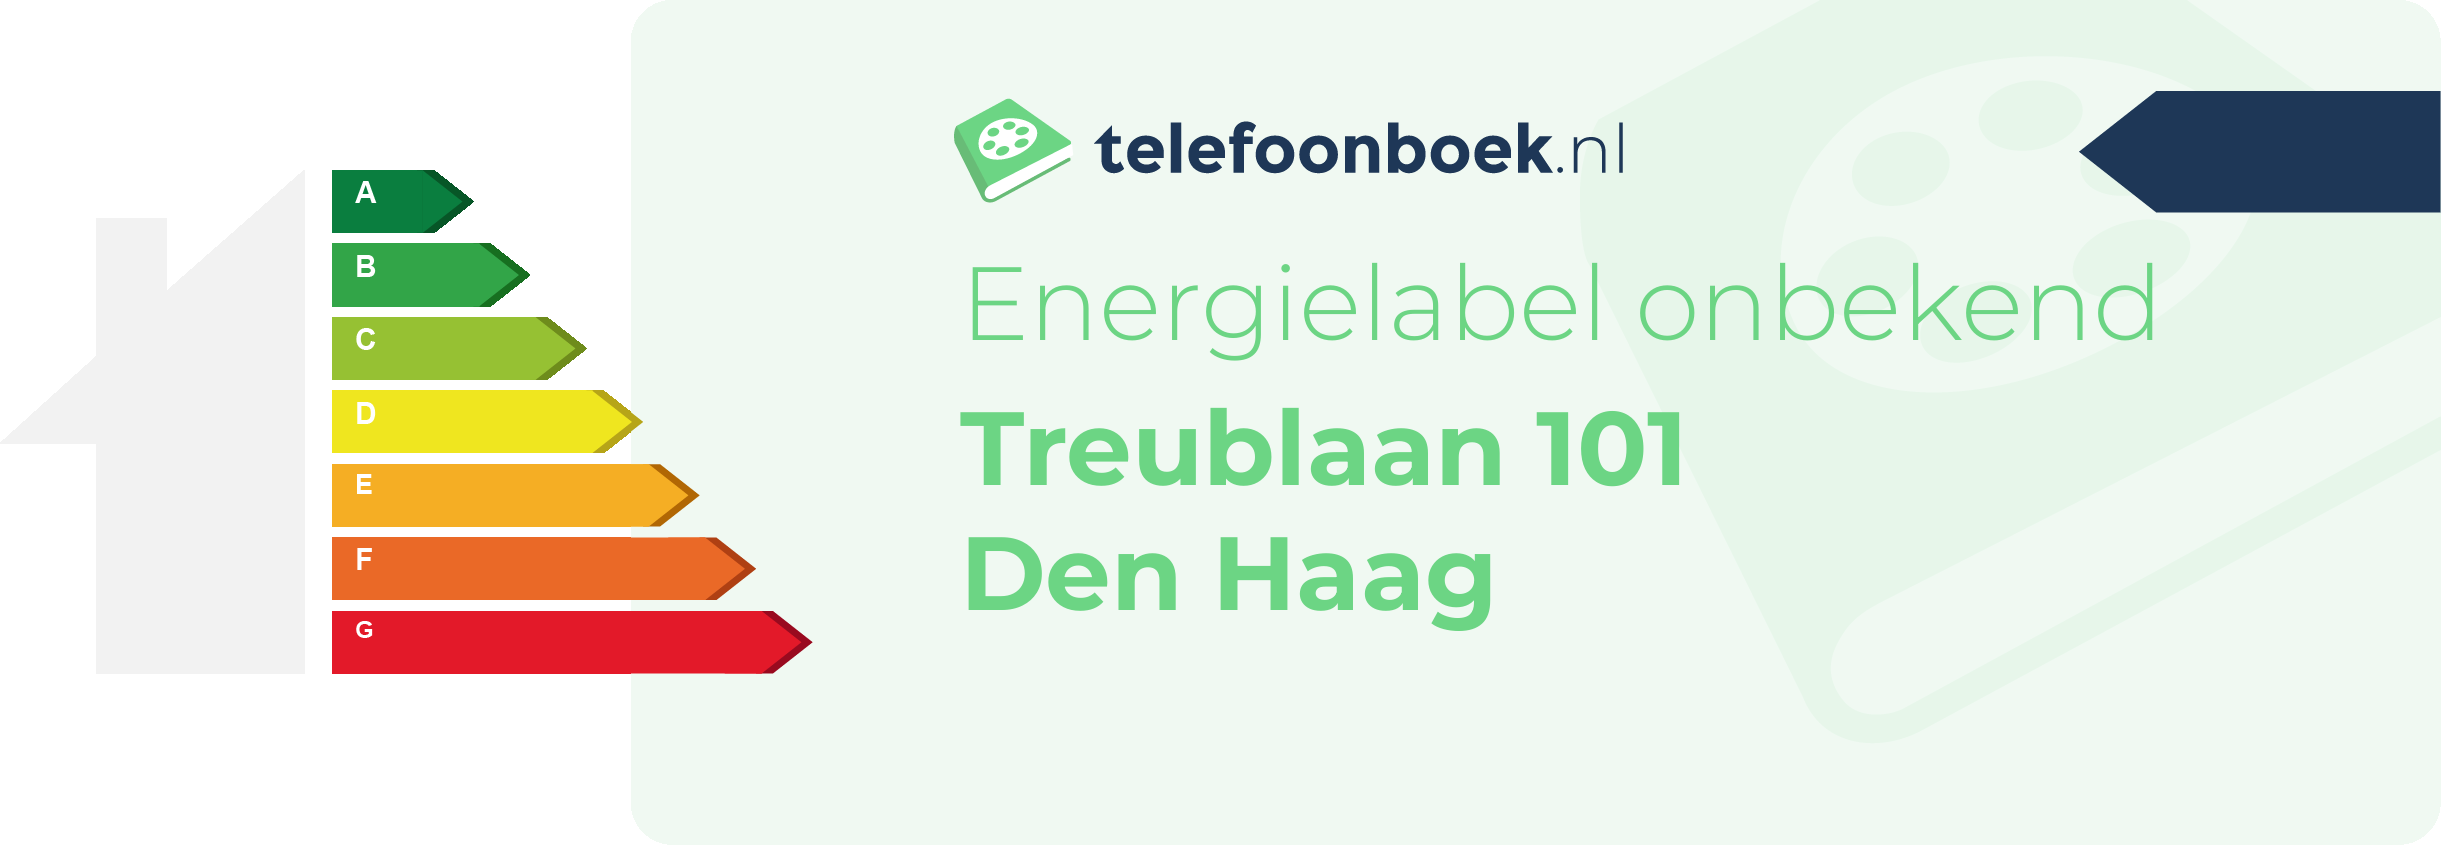 Energielabel Treublaan 101 Den Haag